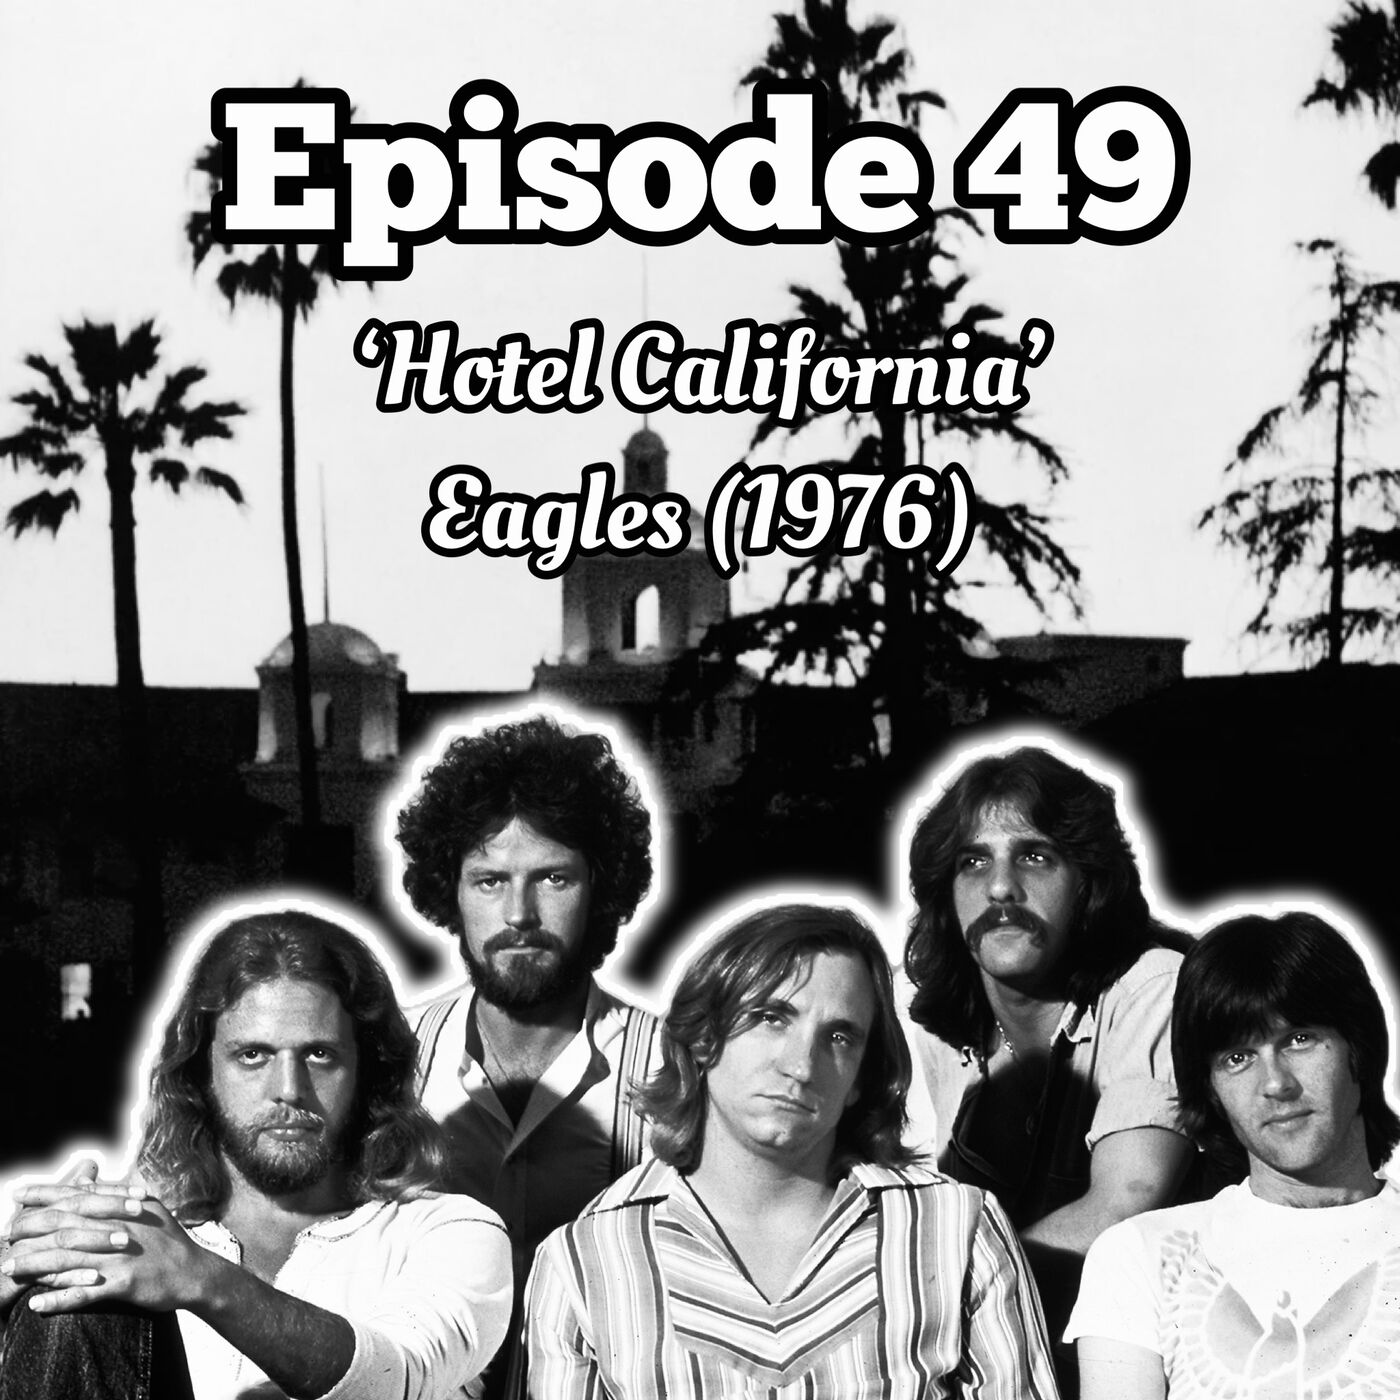 49. ’Hotel California’ - Eagles (1976)